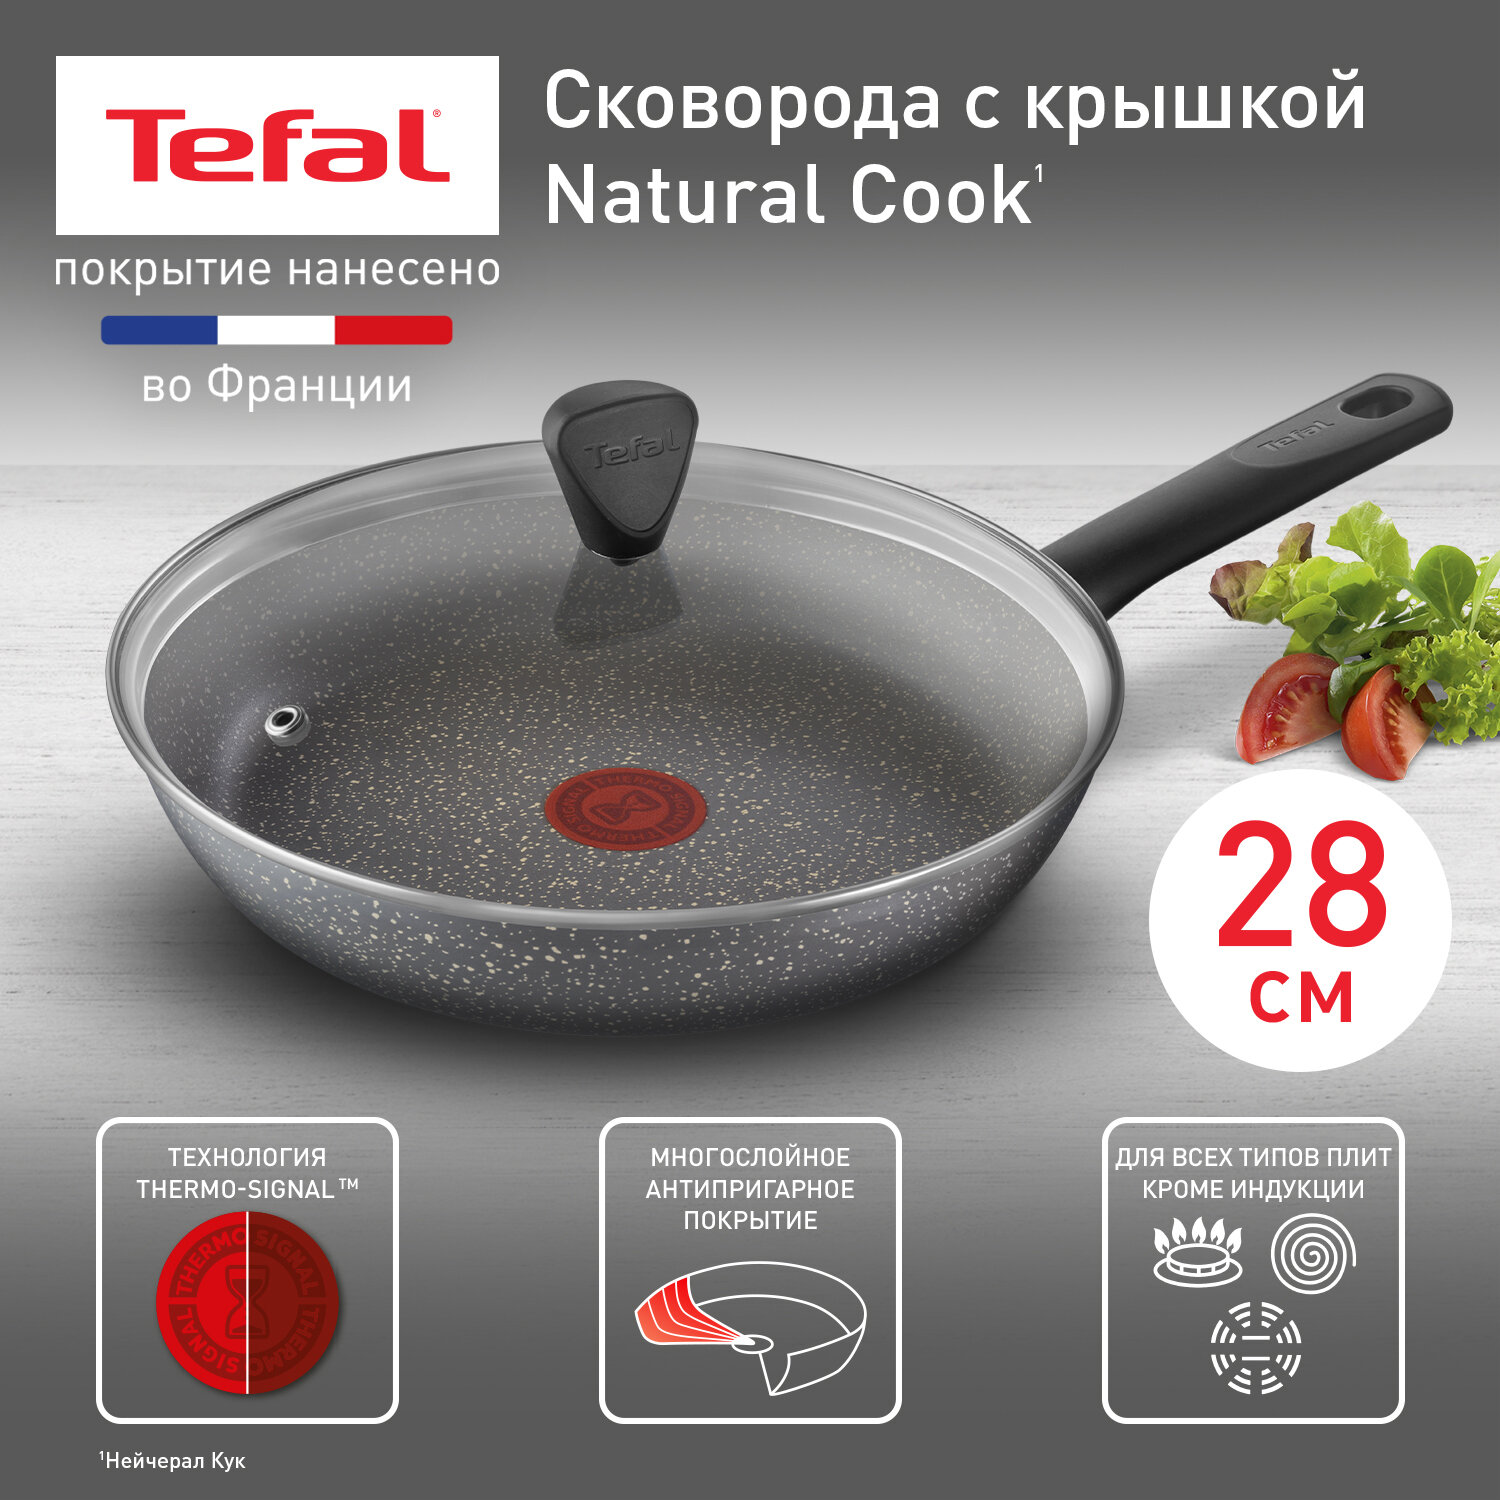 Сковорода с крышкой Tefal Natural Cook 04234928, диаметр 28 см, с индикатором температуры и антипригарным покрытием, для газовых, электрических плит